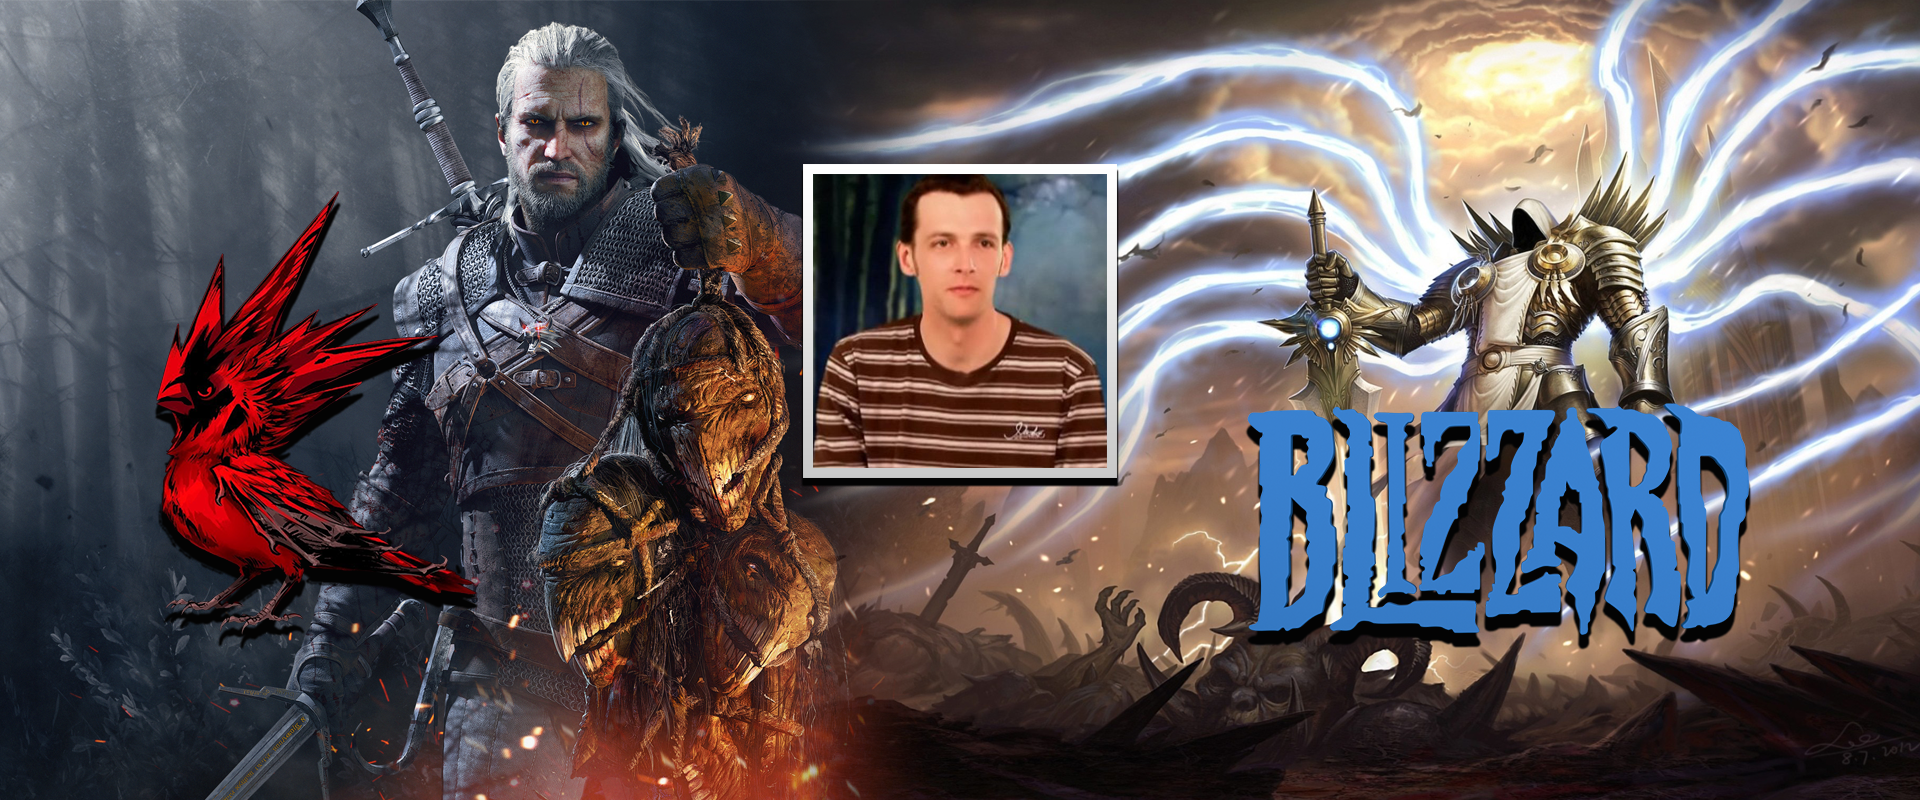 A Witcher 3 és Cyberpunk 2077 kreatív igazgatója a Blizzardnál dolgozik tovább